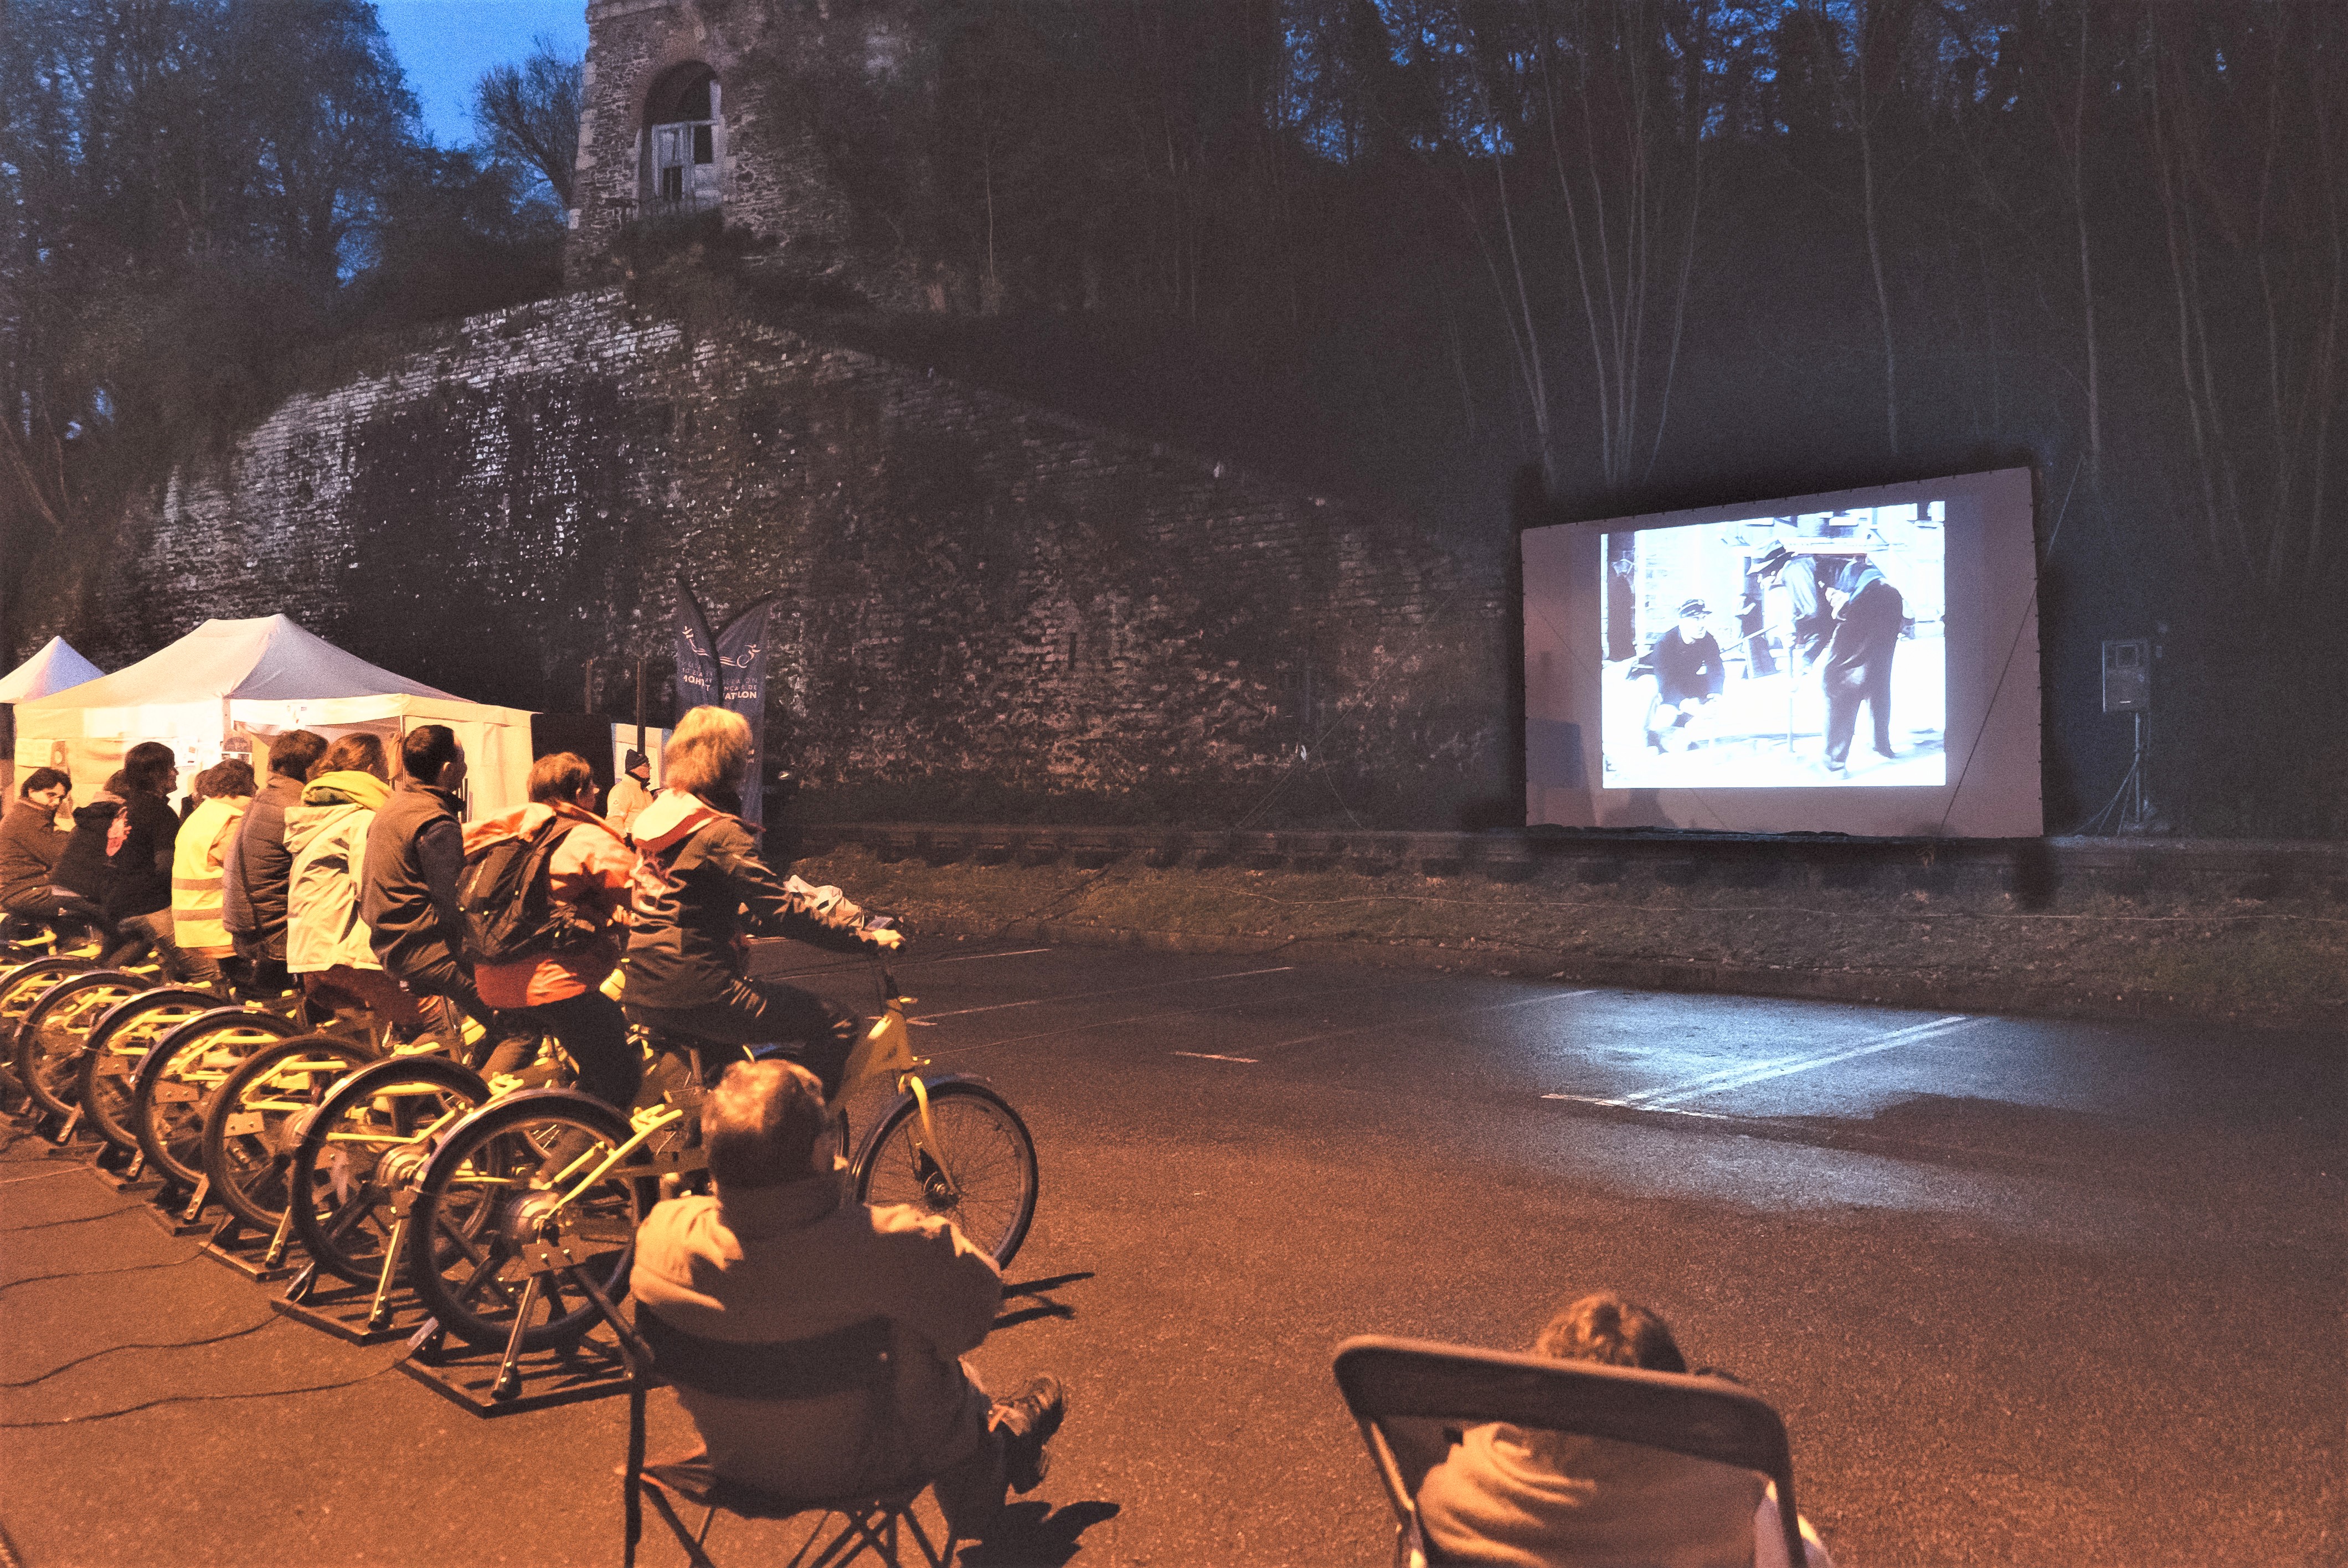 Cyclisme et cinéma : des liens indéfectibles ? Notre enquête